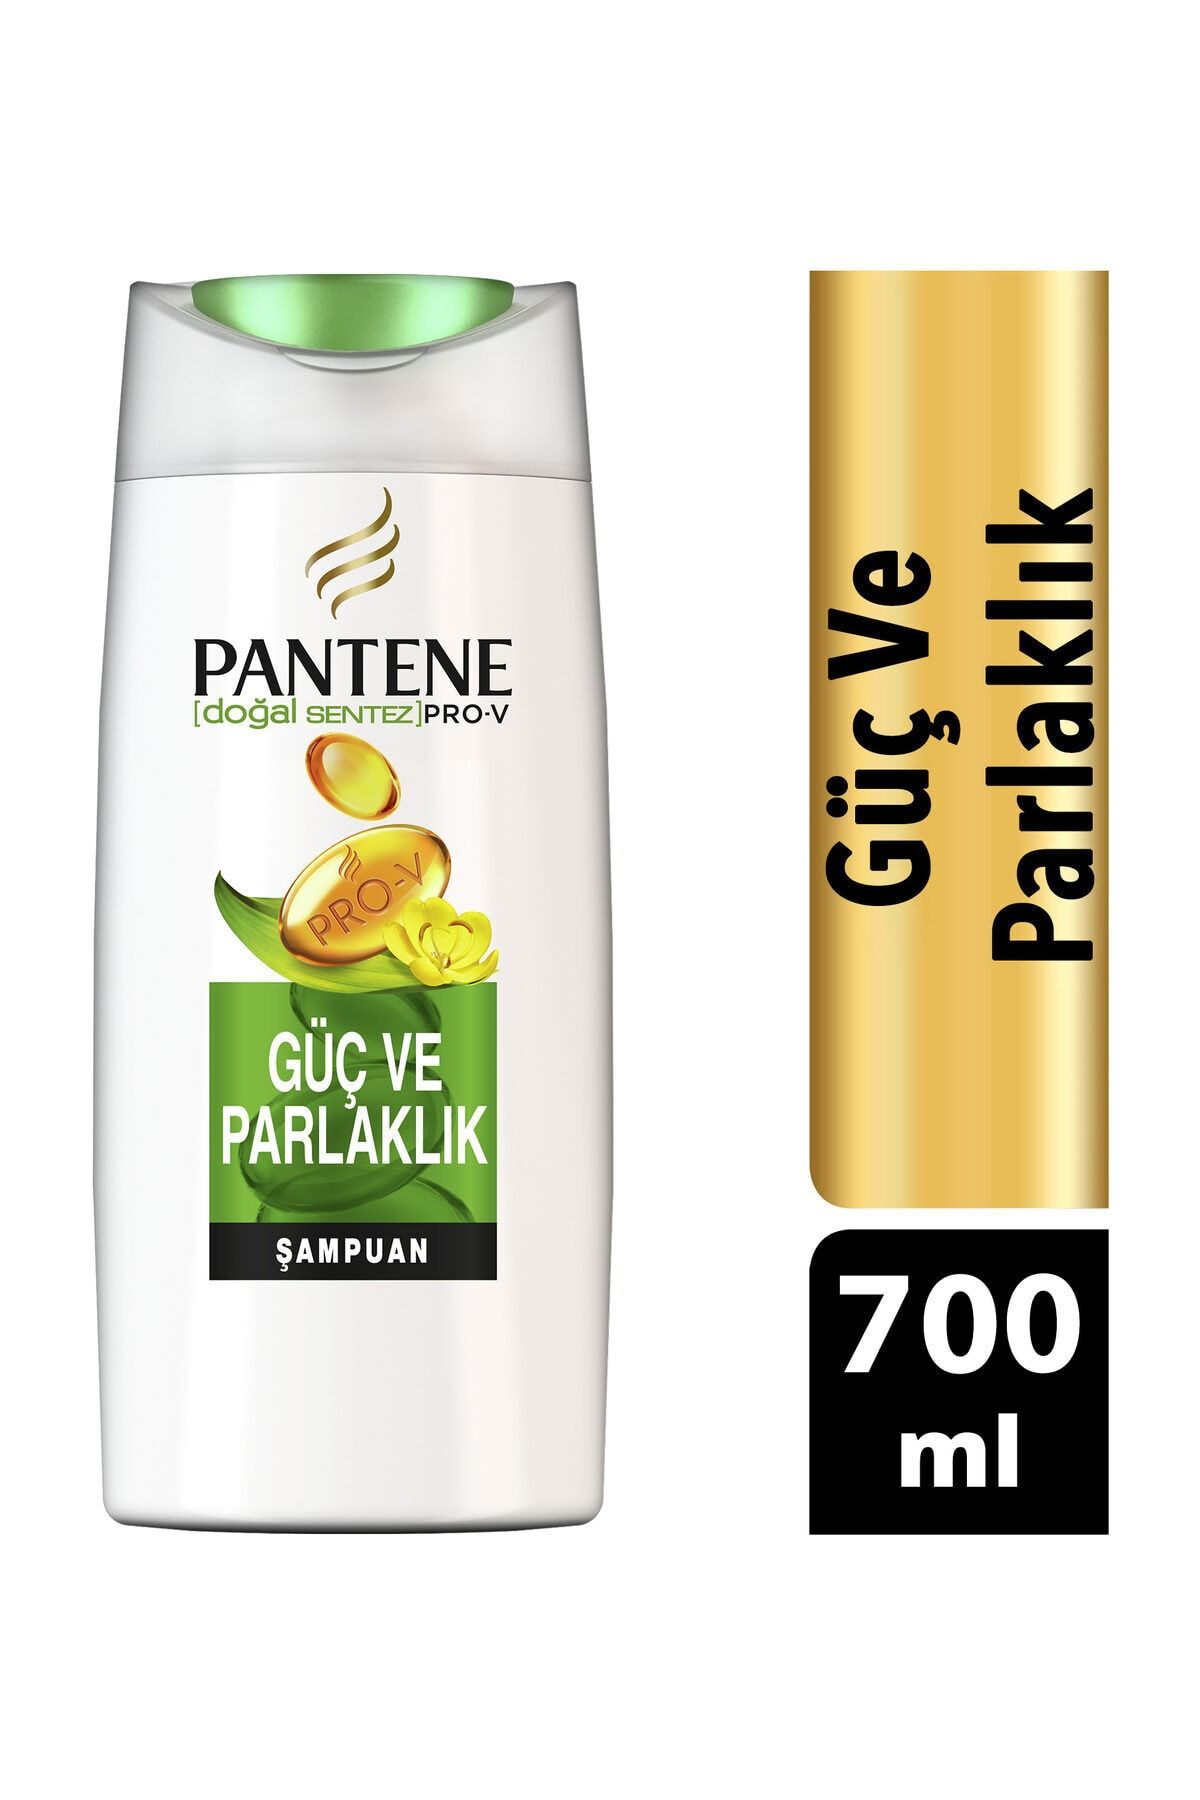 Pantene Şampuan Güçlü Parlaklık 700 ml